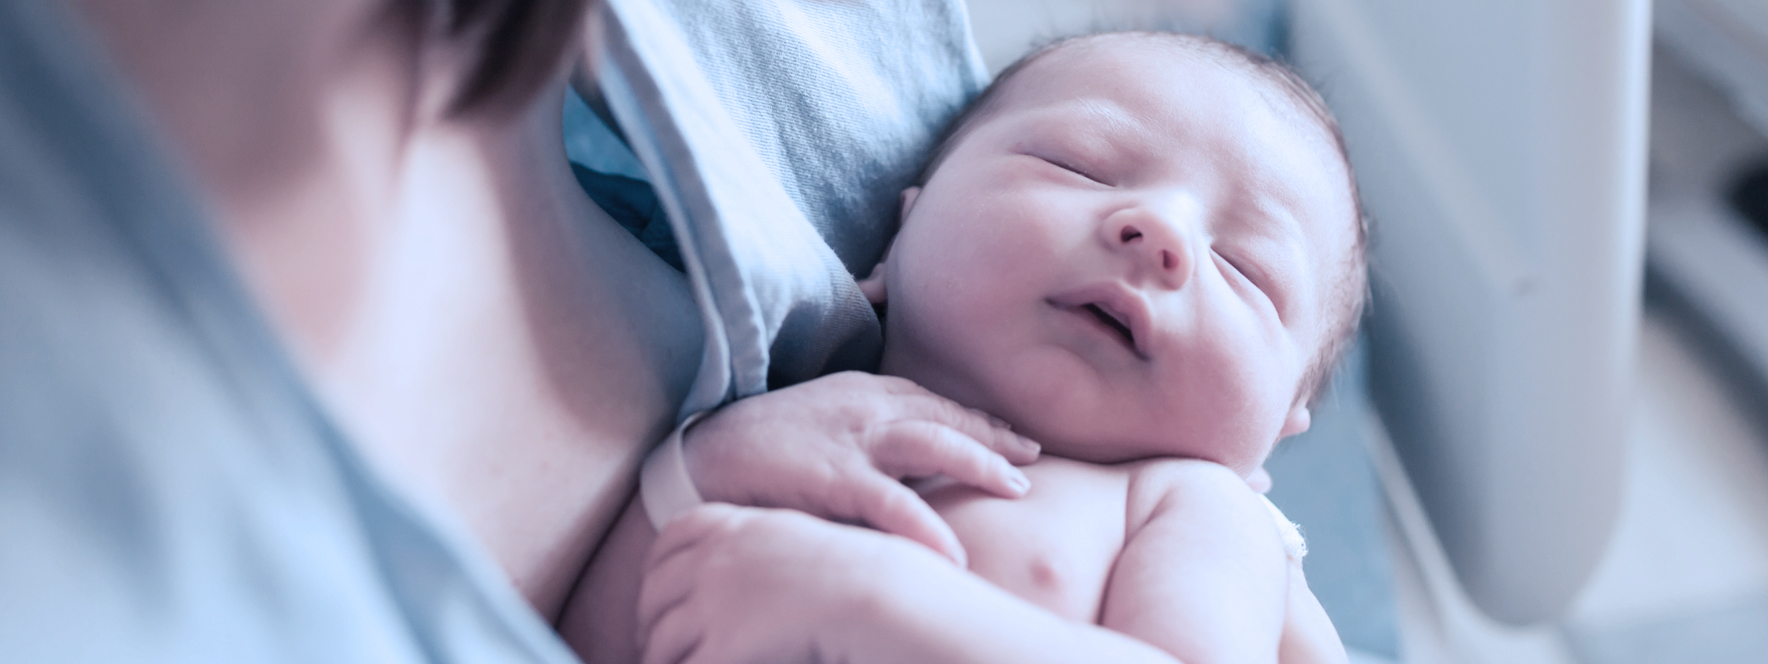 Soutenir la femme à l’accouchement par la massothérapie - Blogue du Réseau